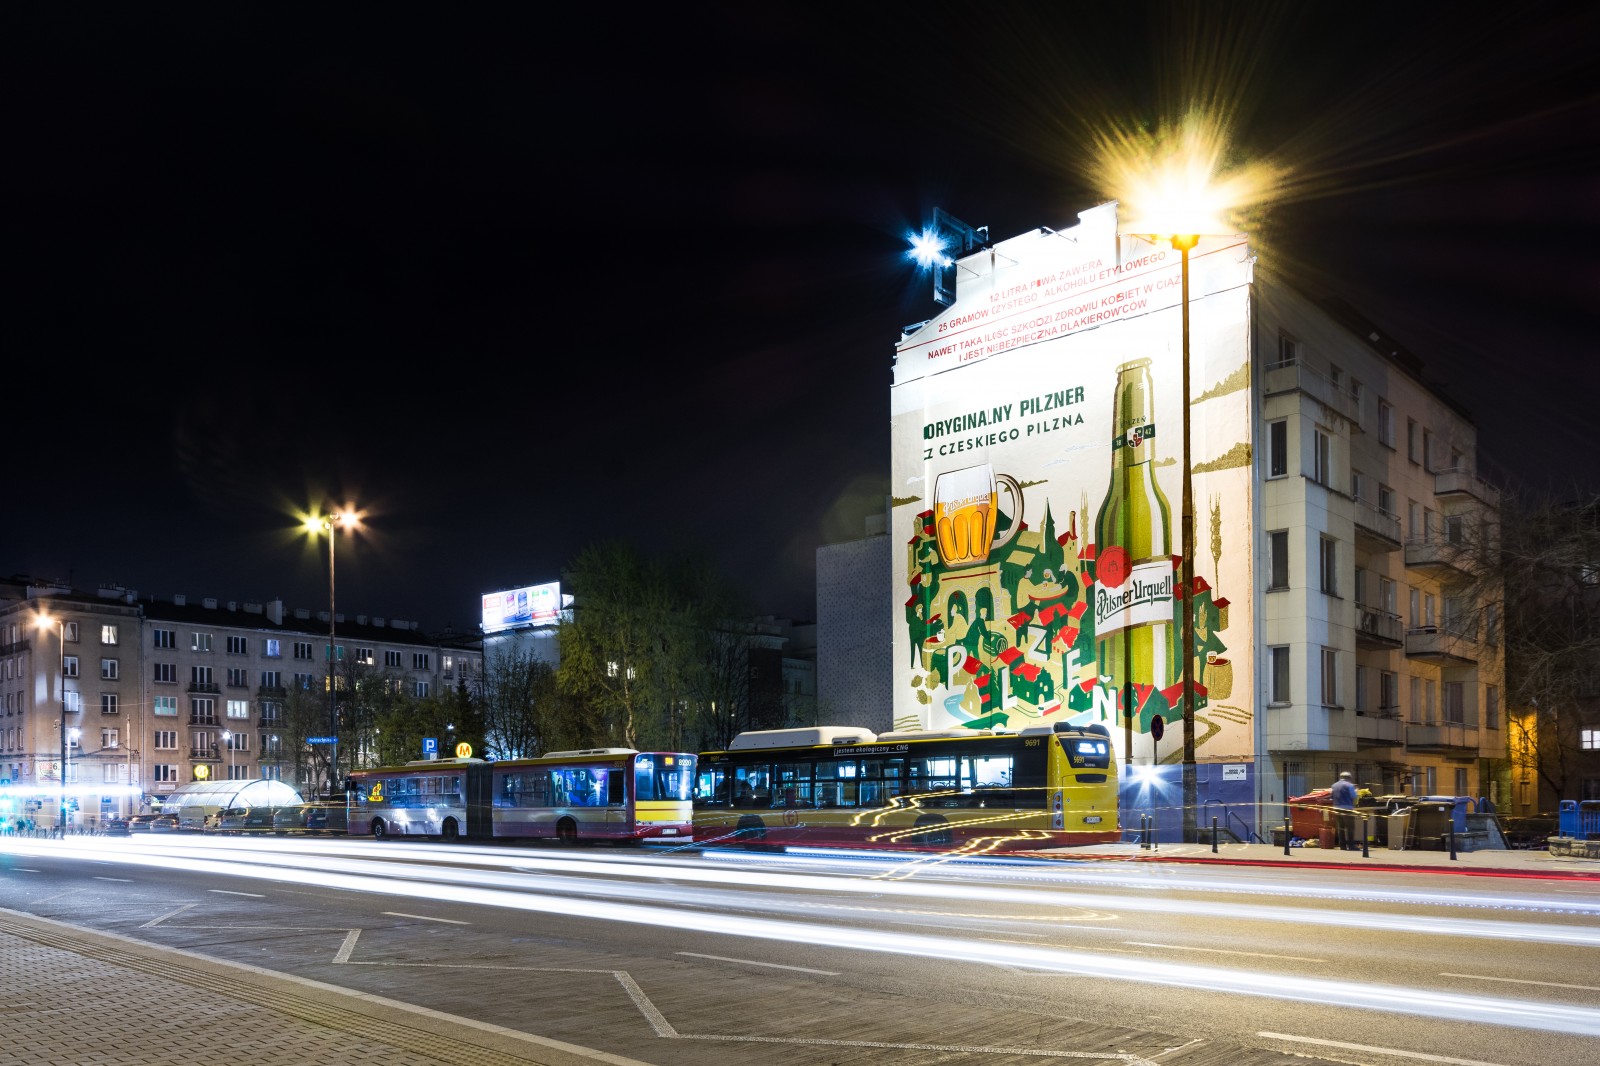 Mural Pilsner Urquell przy ulicy Jaworzyńskiej 8 w Warszawie | Oryginalny pilzner z czeskiego Pilzna | Portfolio